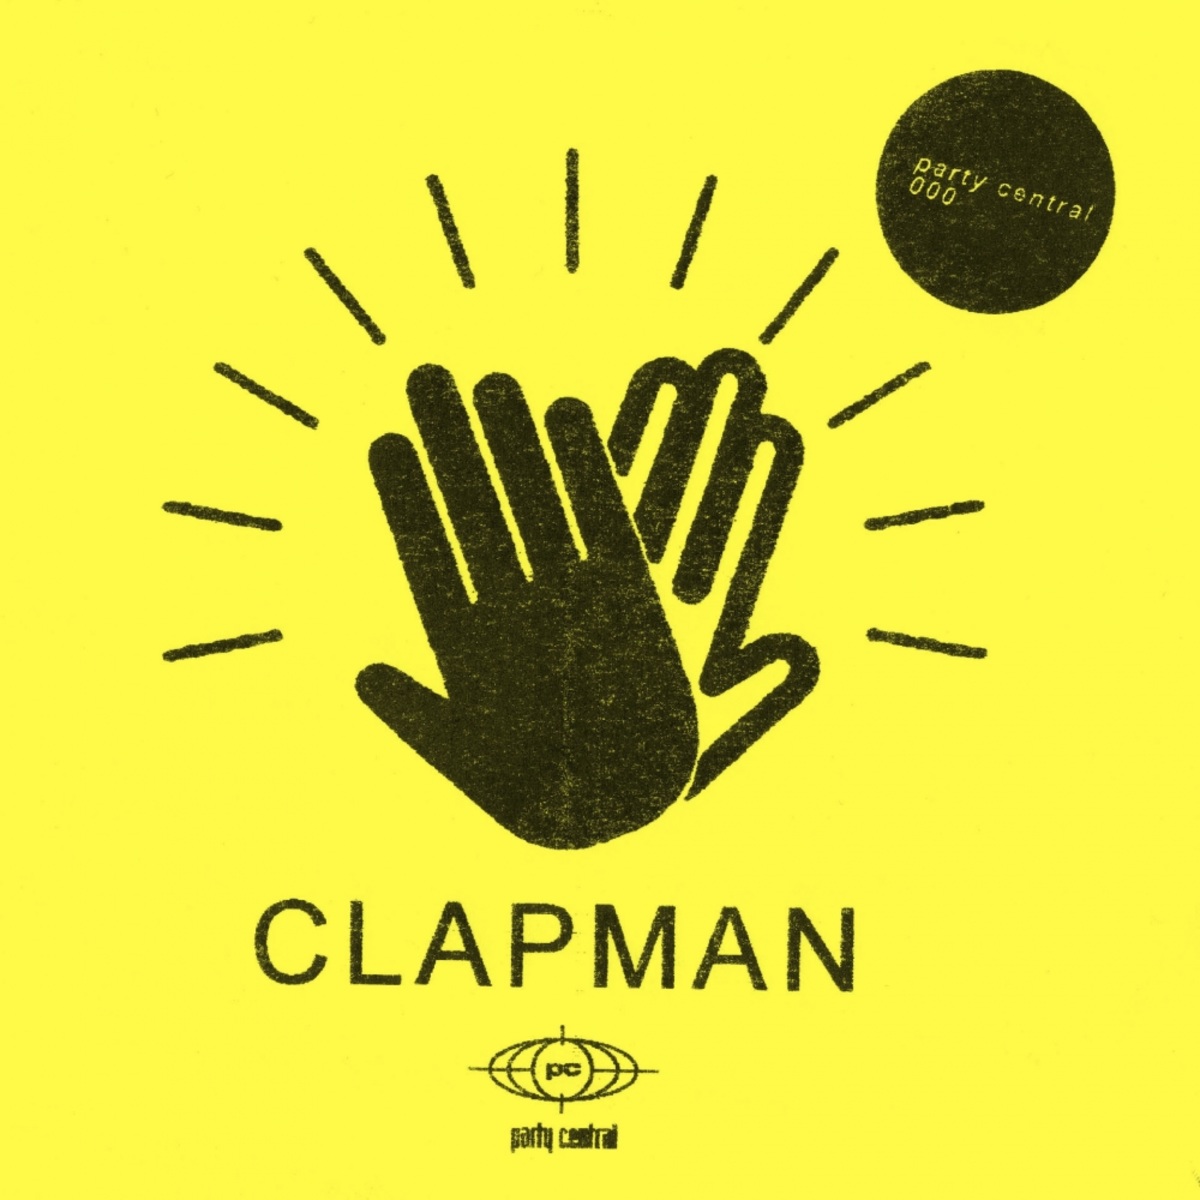 Clapman - Clapman / Party Central